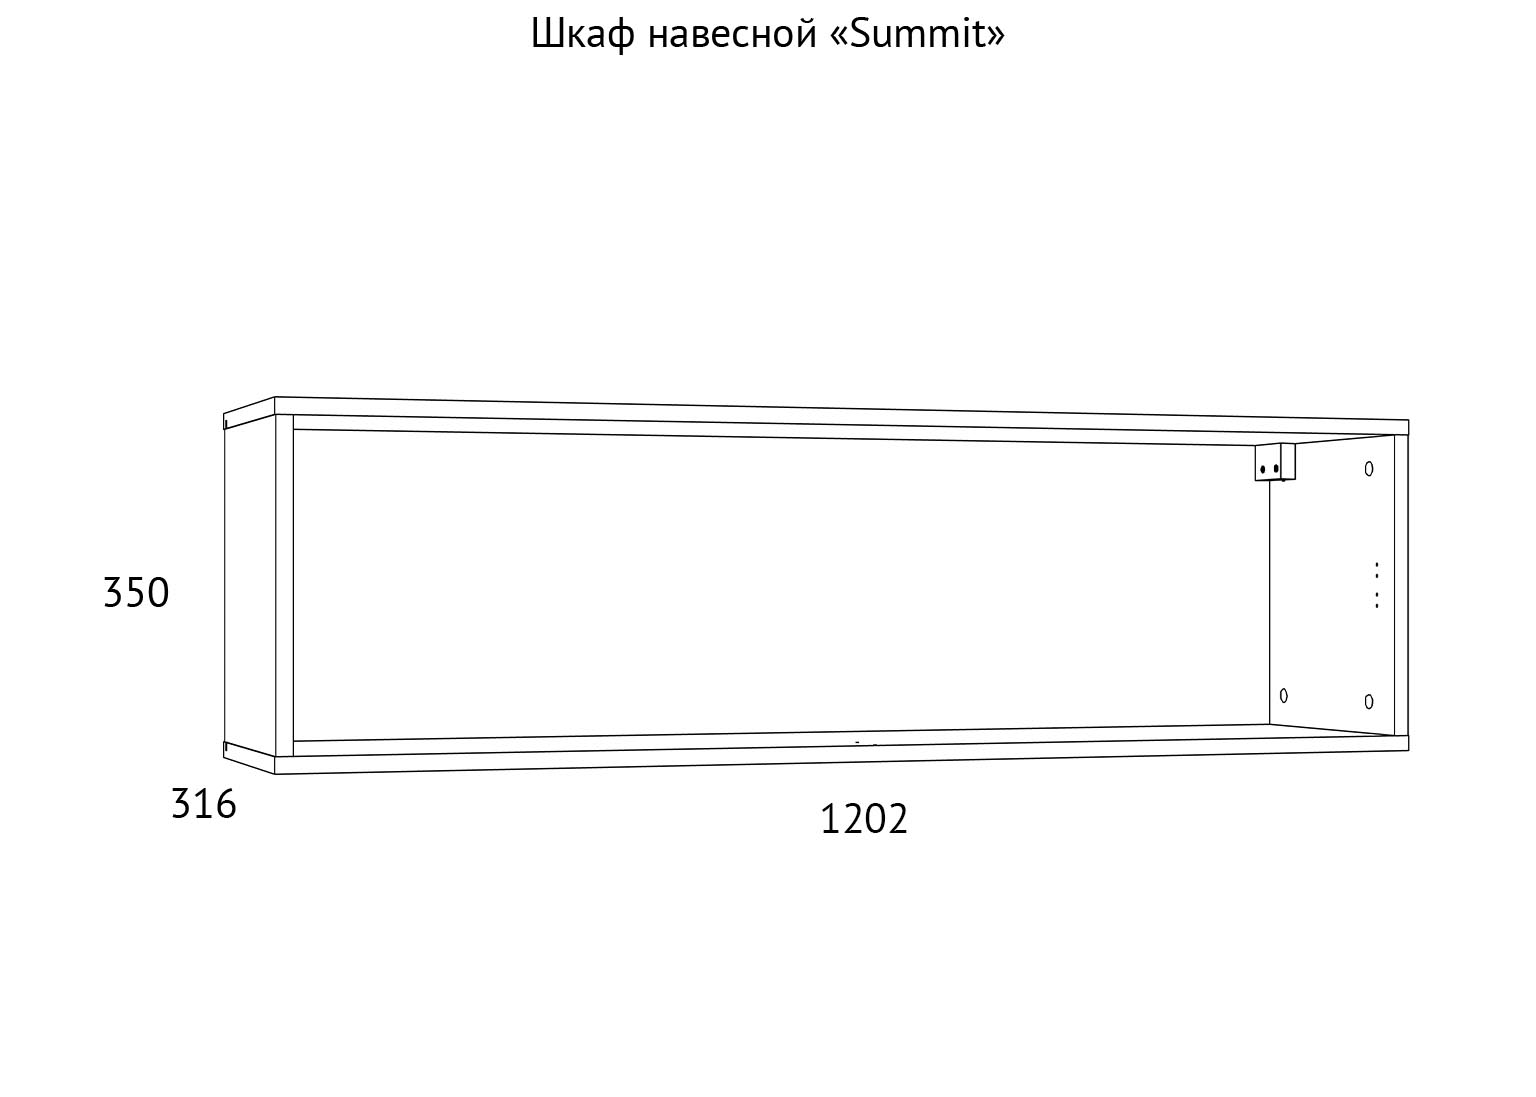 НМ 014.21 Шкаф навесной Summit схема Мебель Краснодар